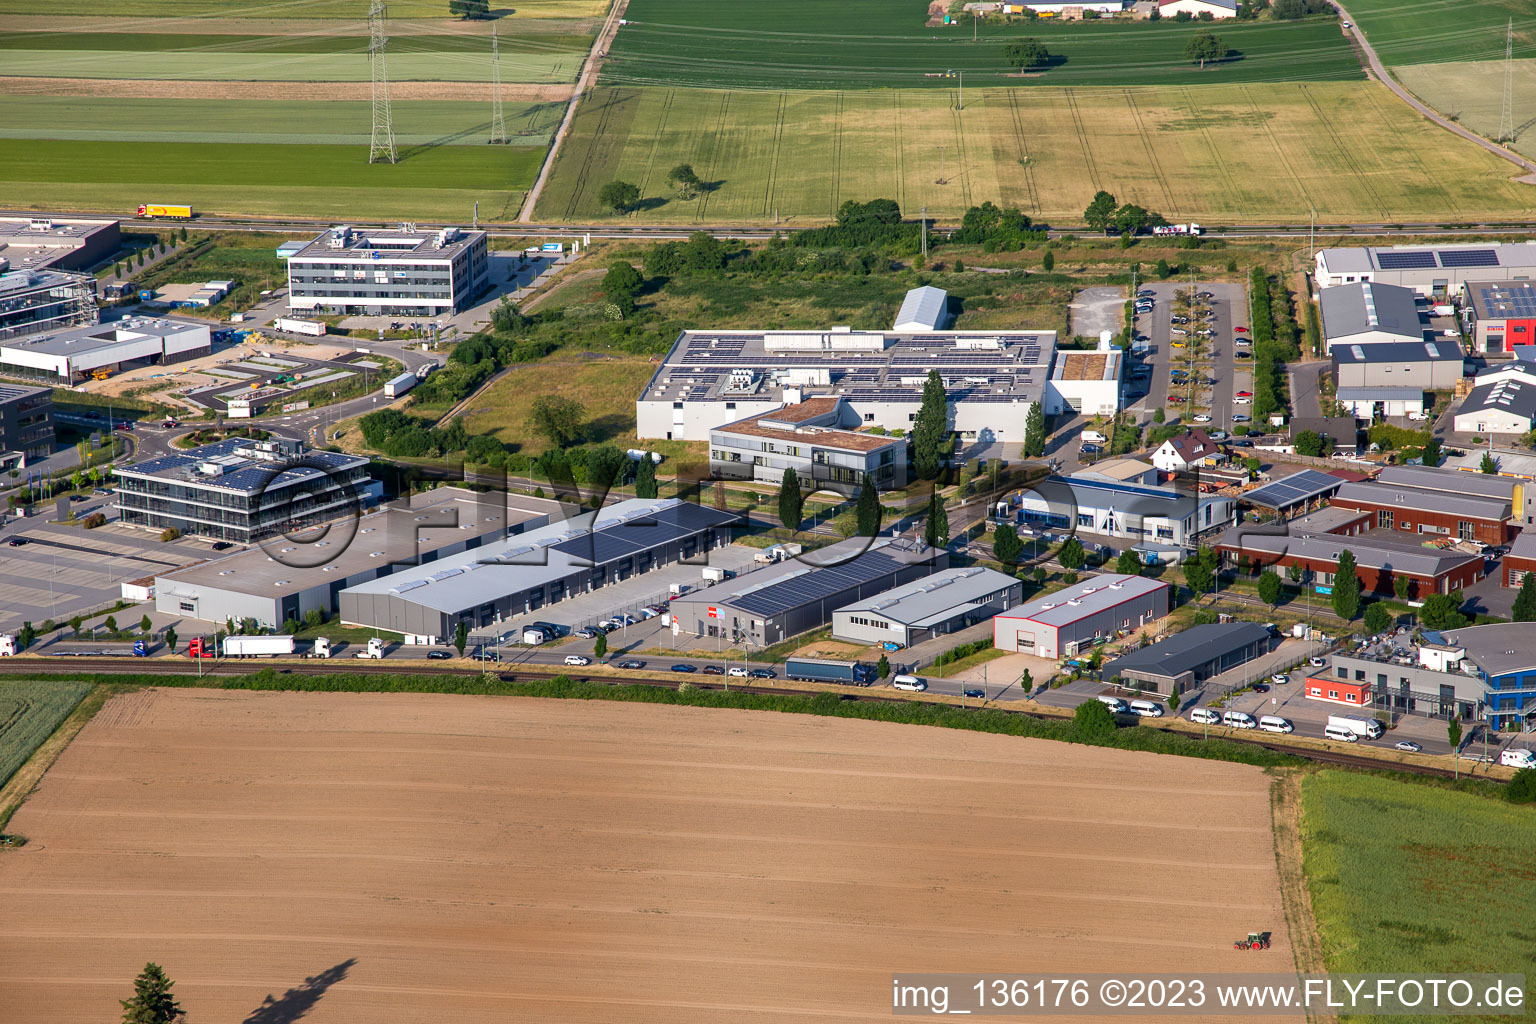 Vue aérienne de Zone industrielle nord de la vallée de Spire à Rülzheim dans le département Rhénanie-Palatinat, Allemagne